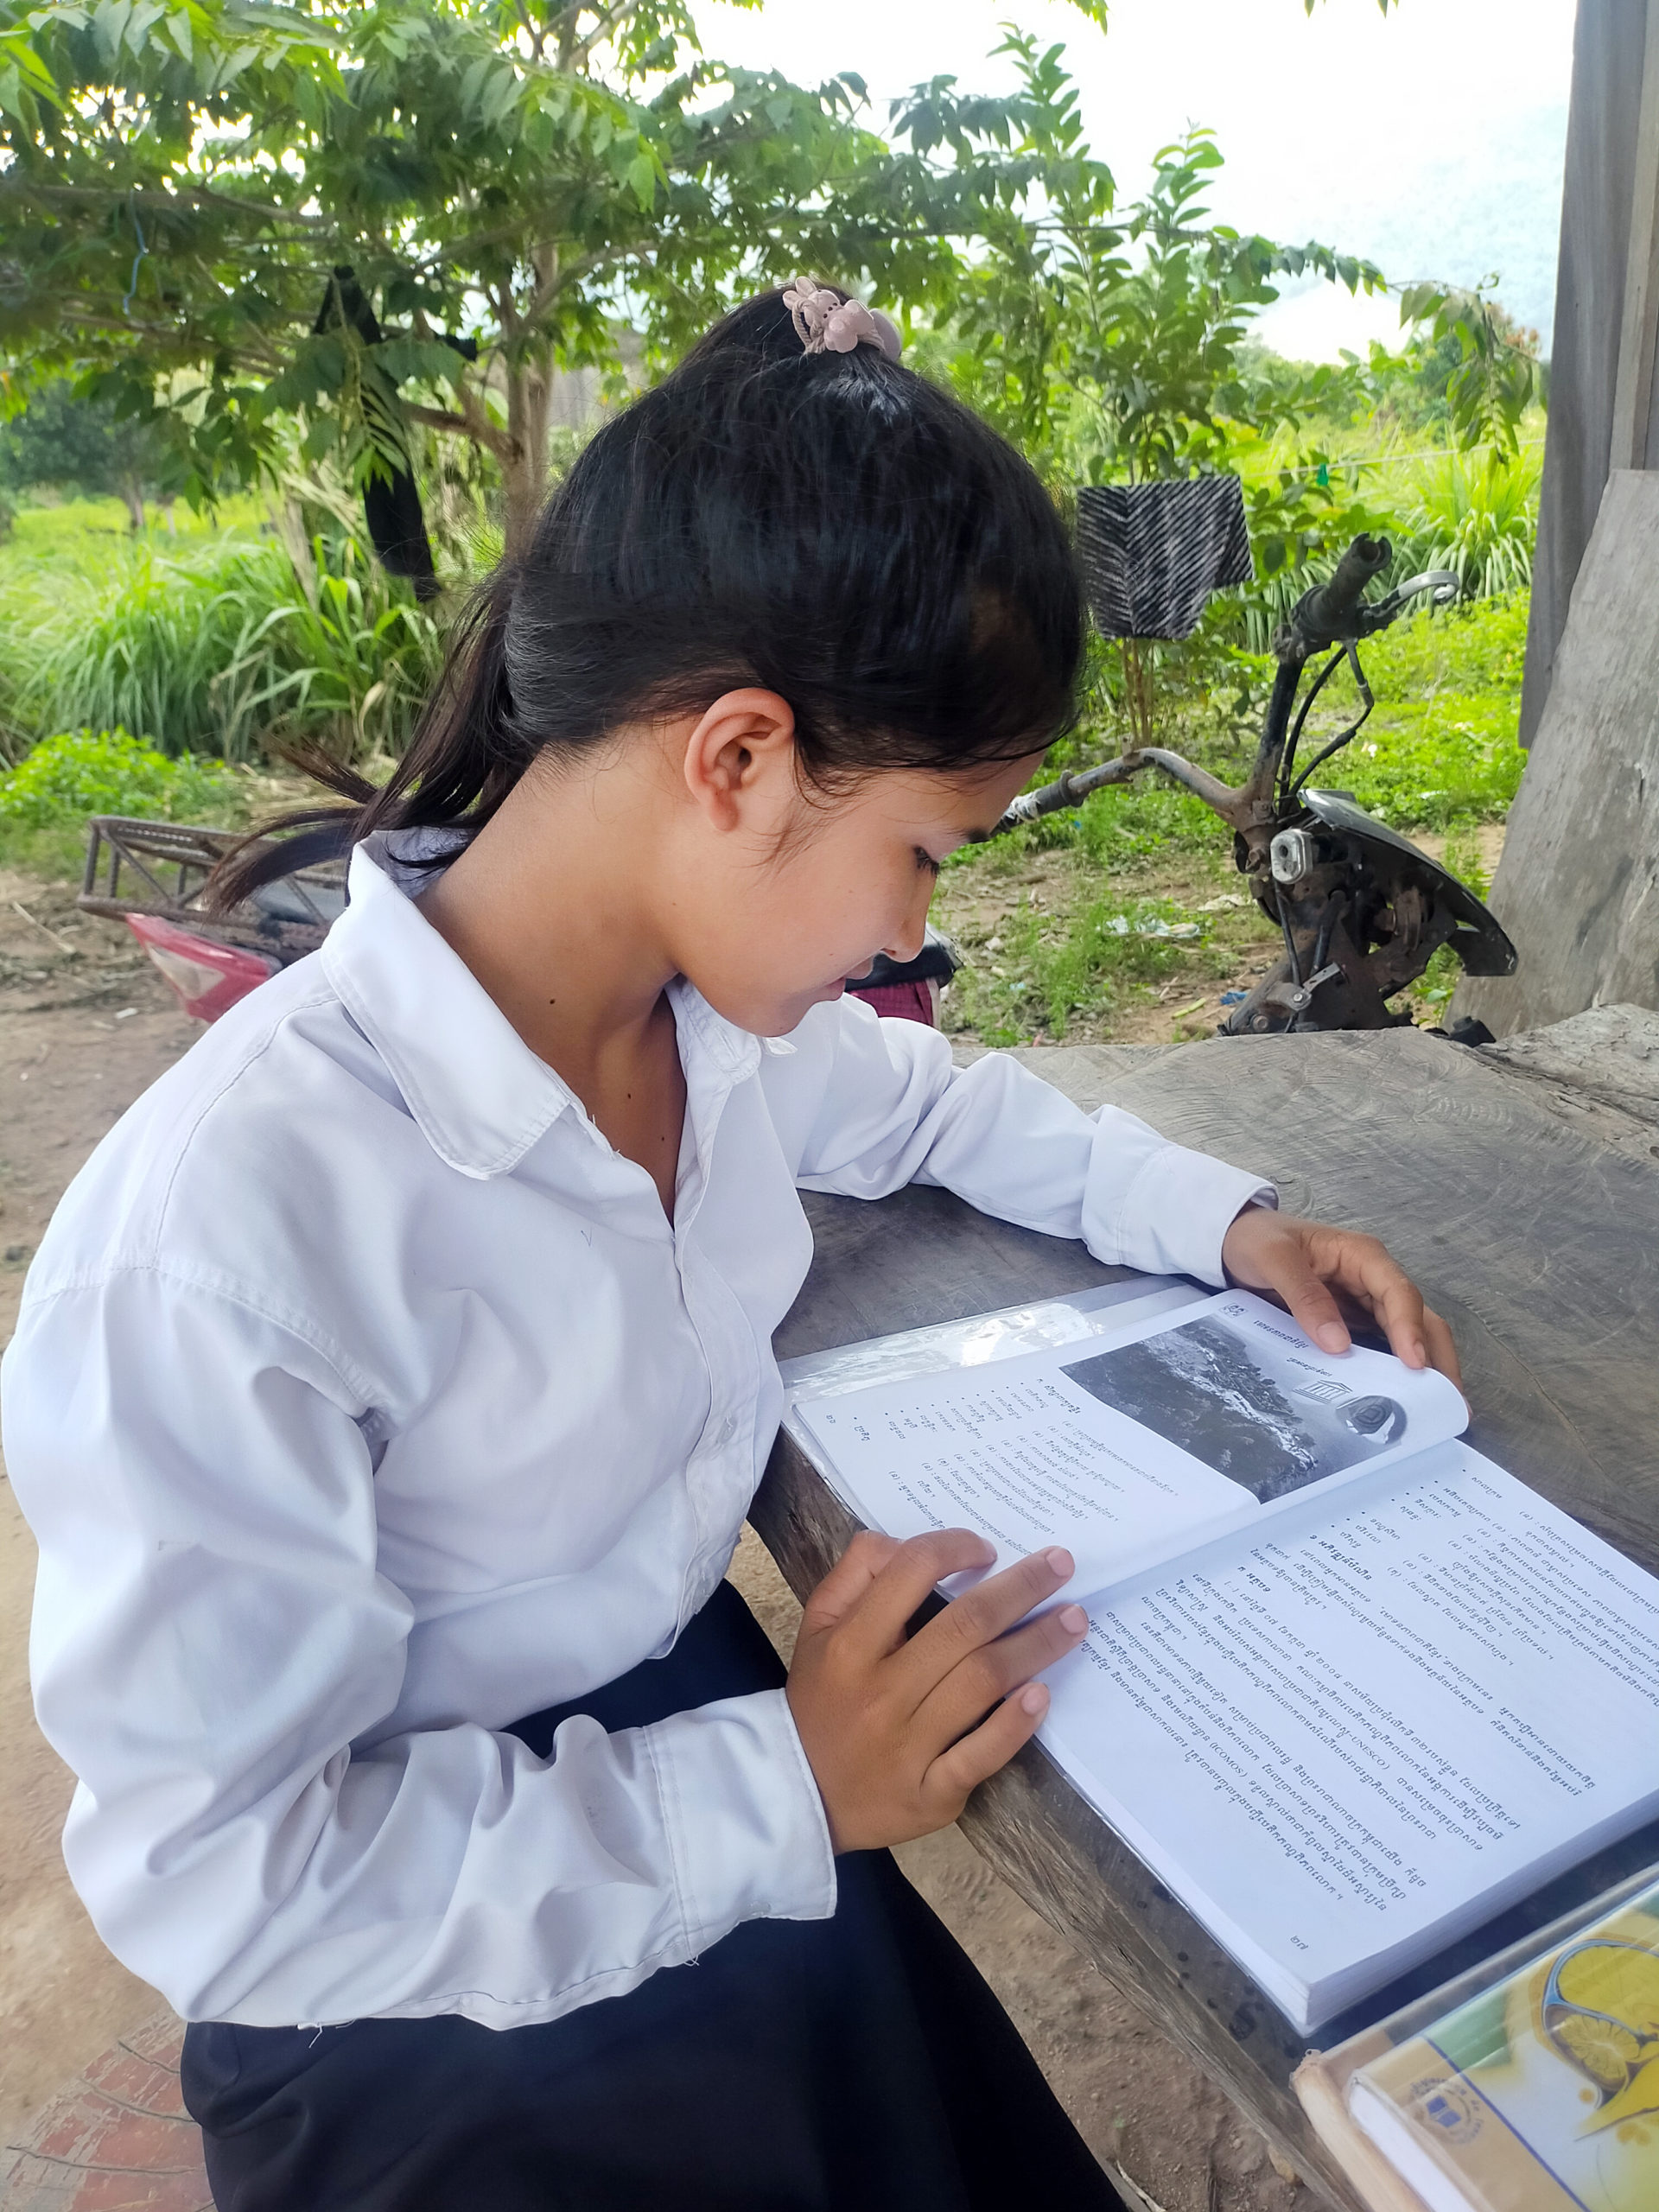 Soeum, en flicka från Kambodja, sitter och läser vid ett bord. Hon syns i profil.